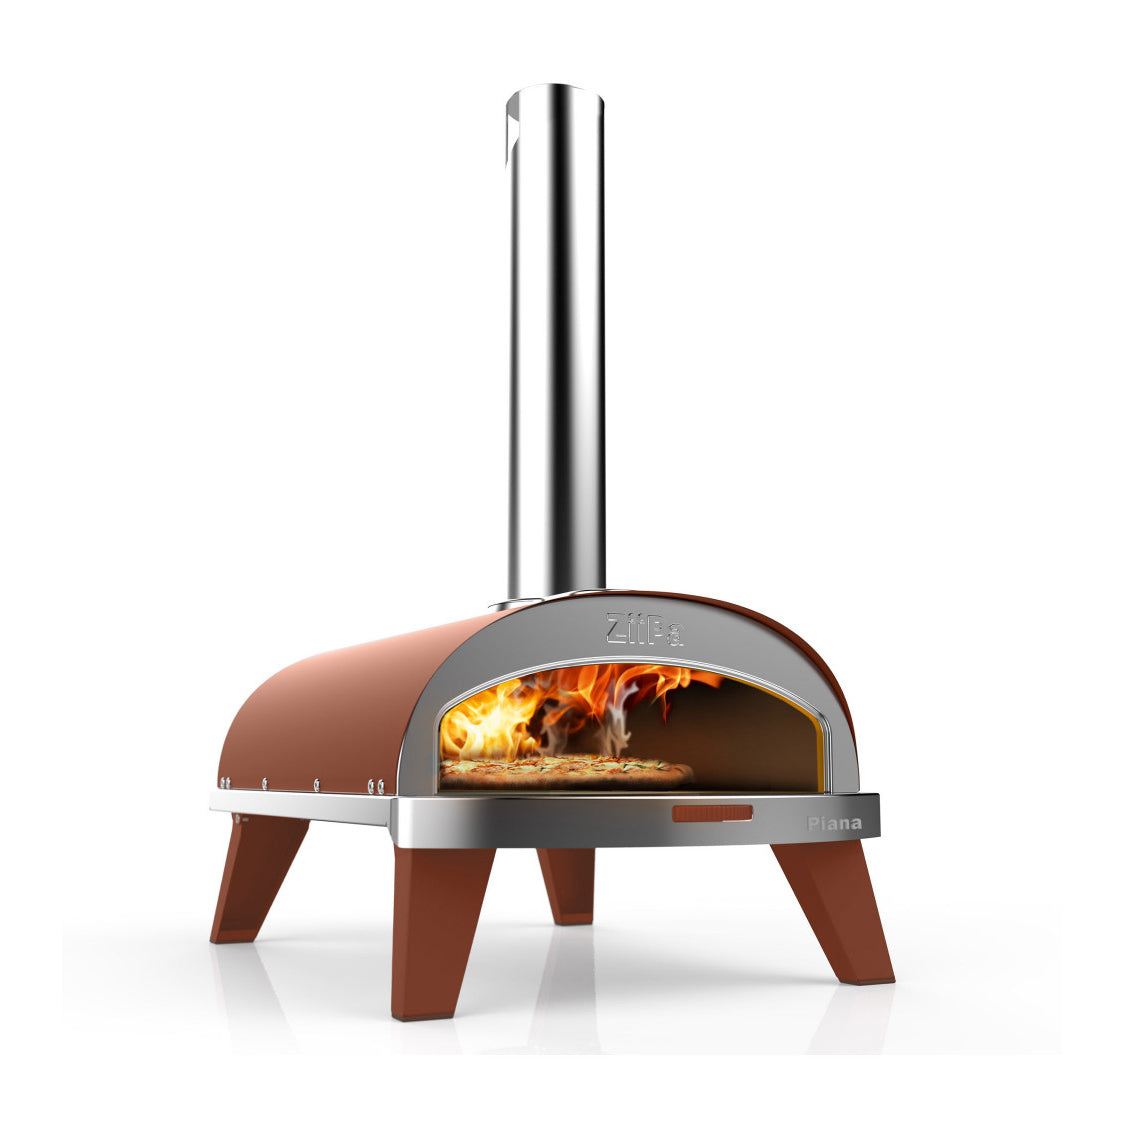 Pizza oven - Terracotta color